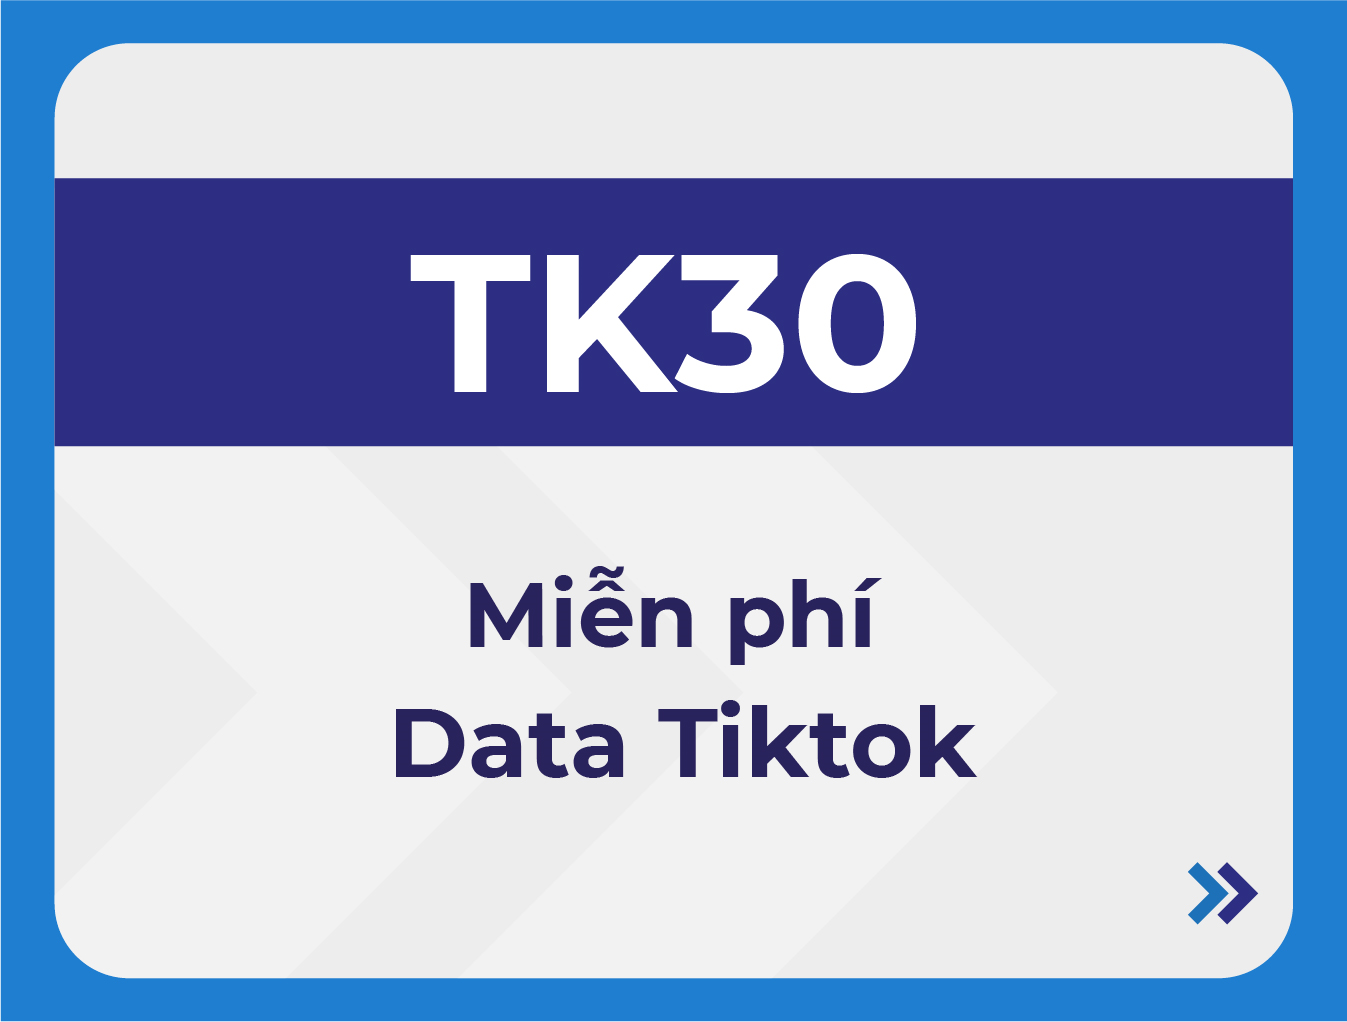 TK30